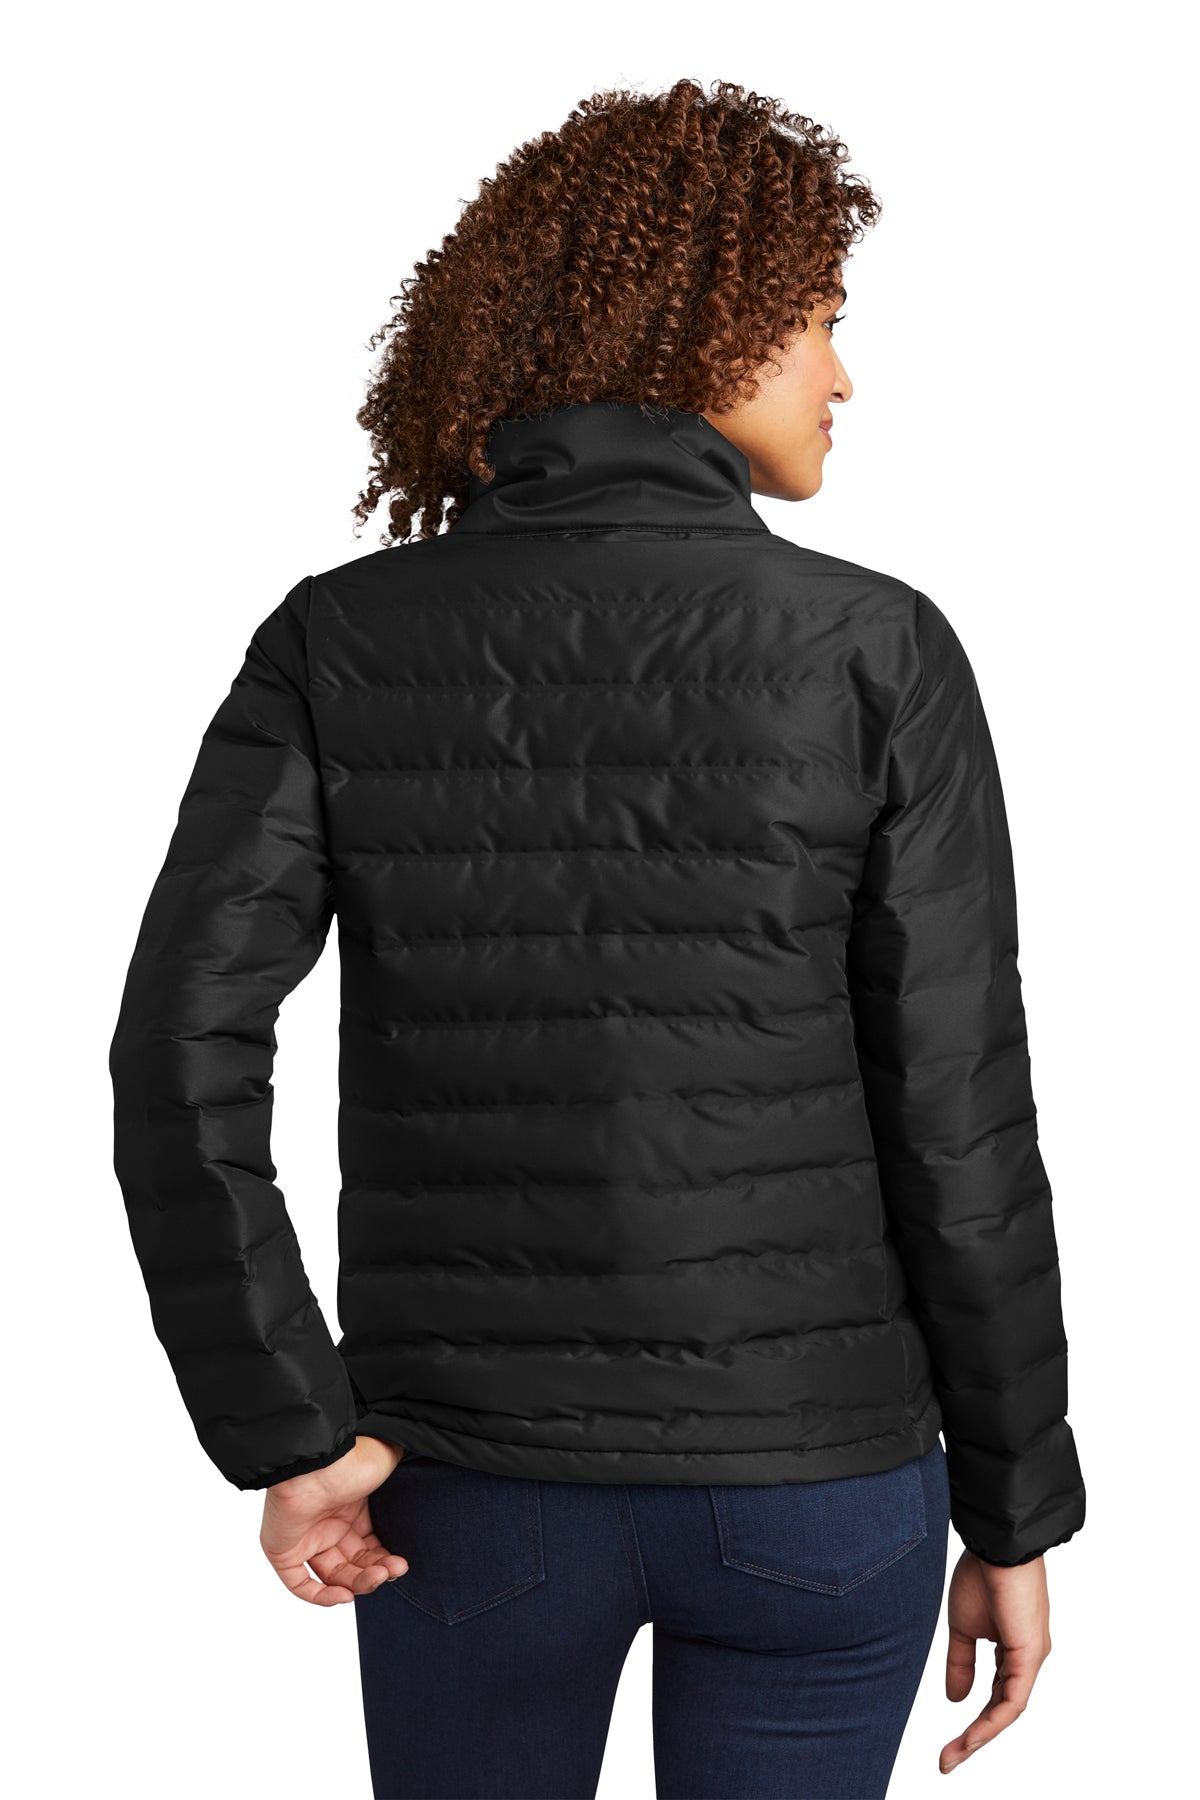 OGIO Ladies Street Puffy Full-Zip Jacket Blacktop